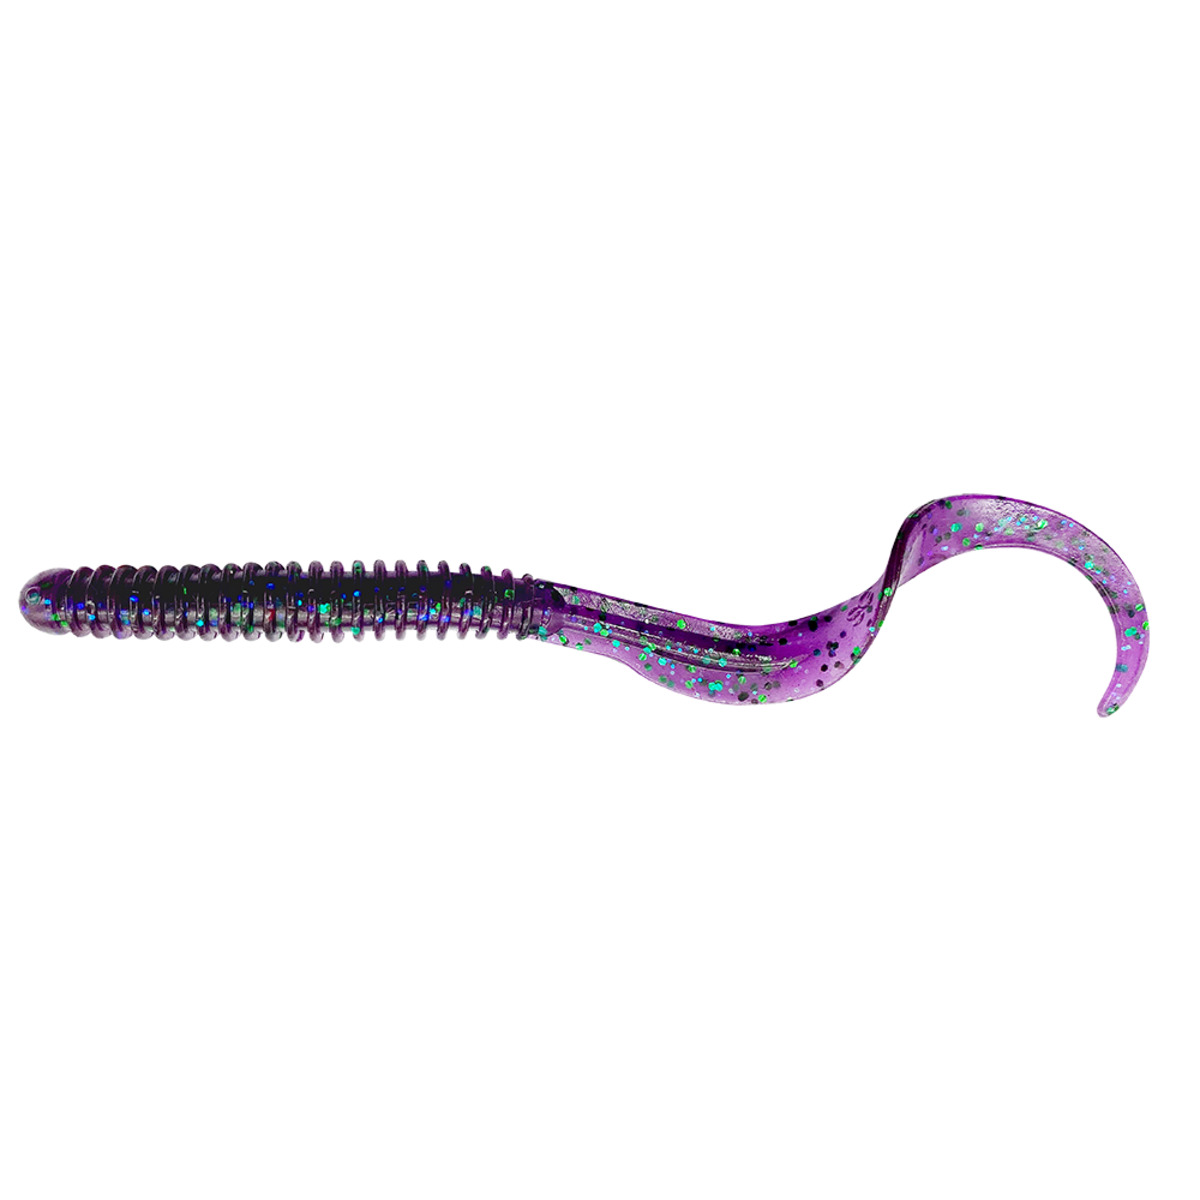 Savage Gear Rib Worm 10.5cm 5g - JUNEBUG